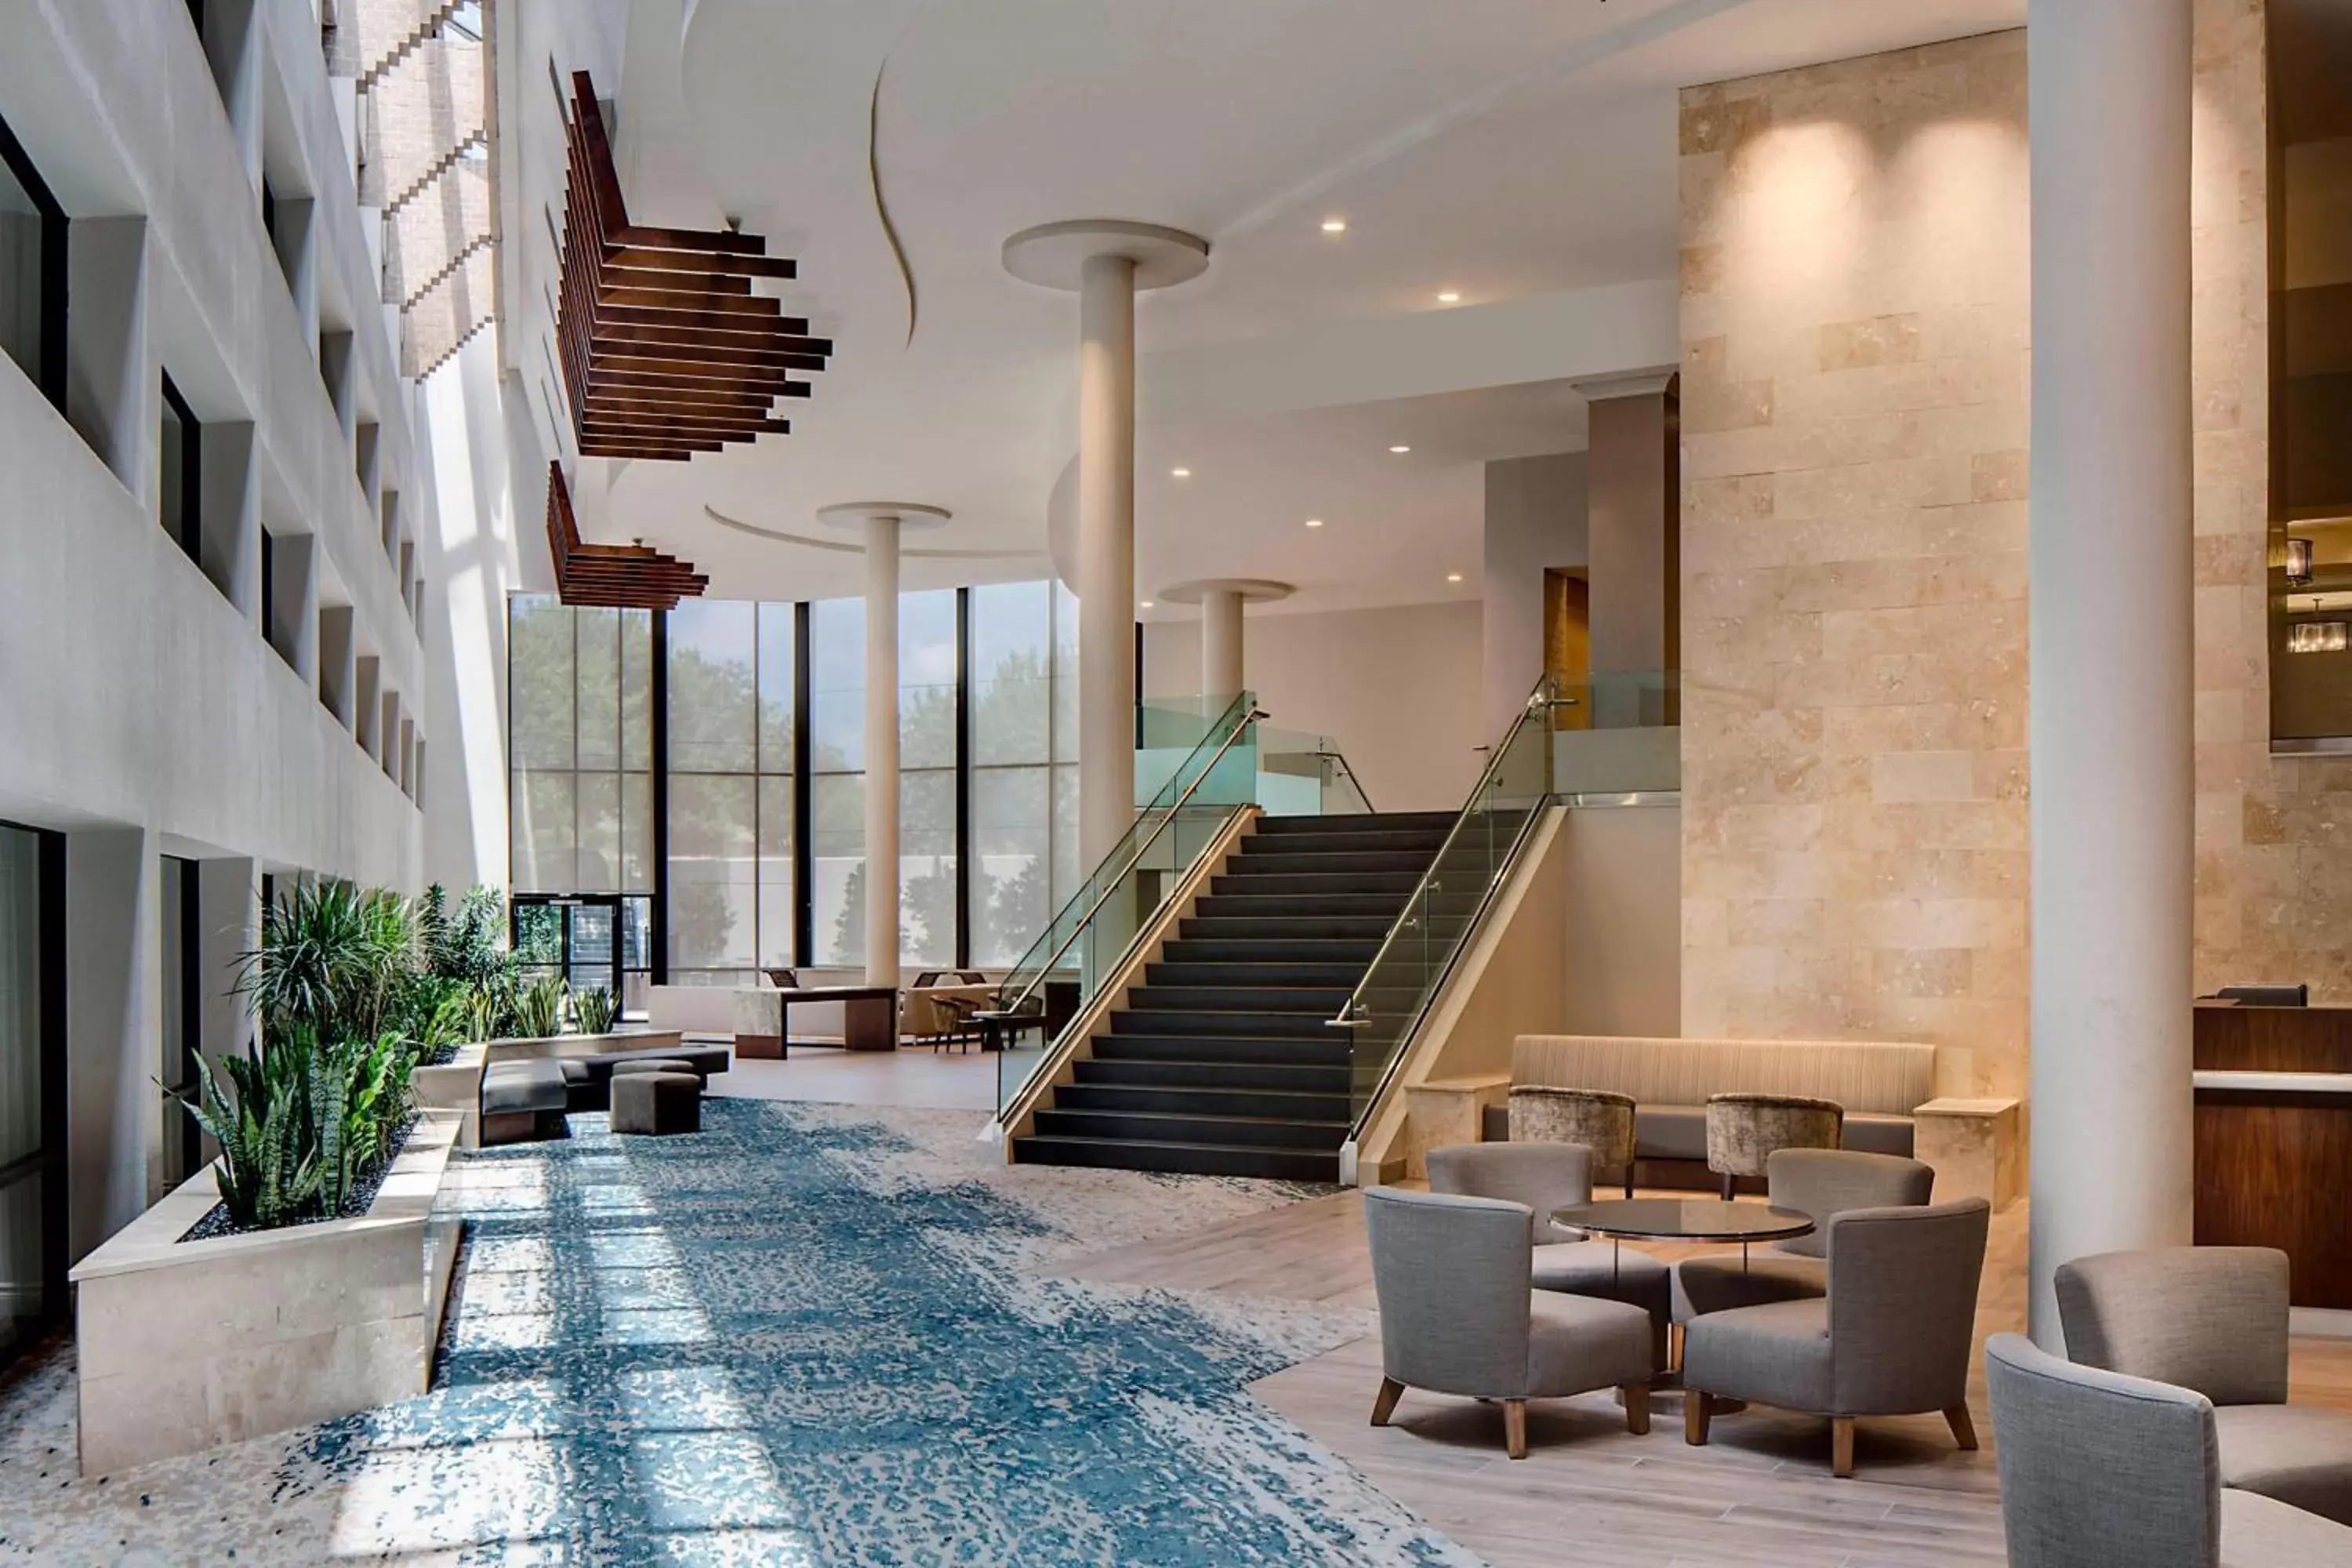 Lobby or reception, Lobby/Reception in San Antonio Marriott Northwest